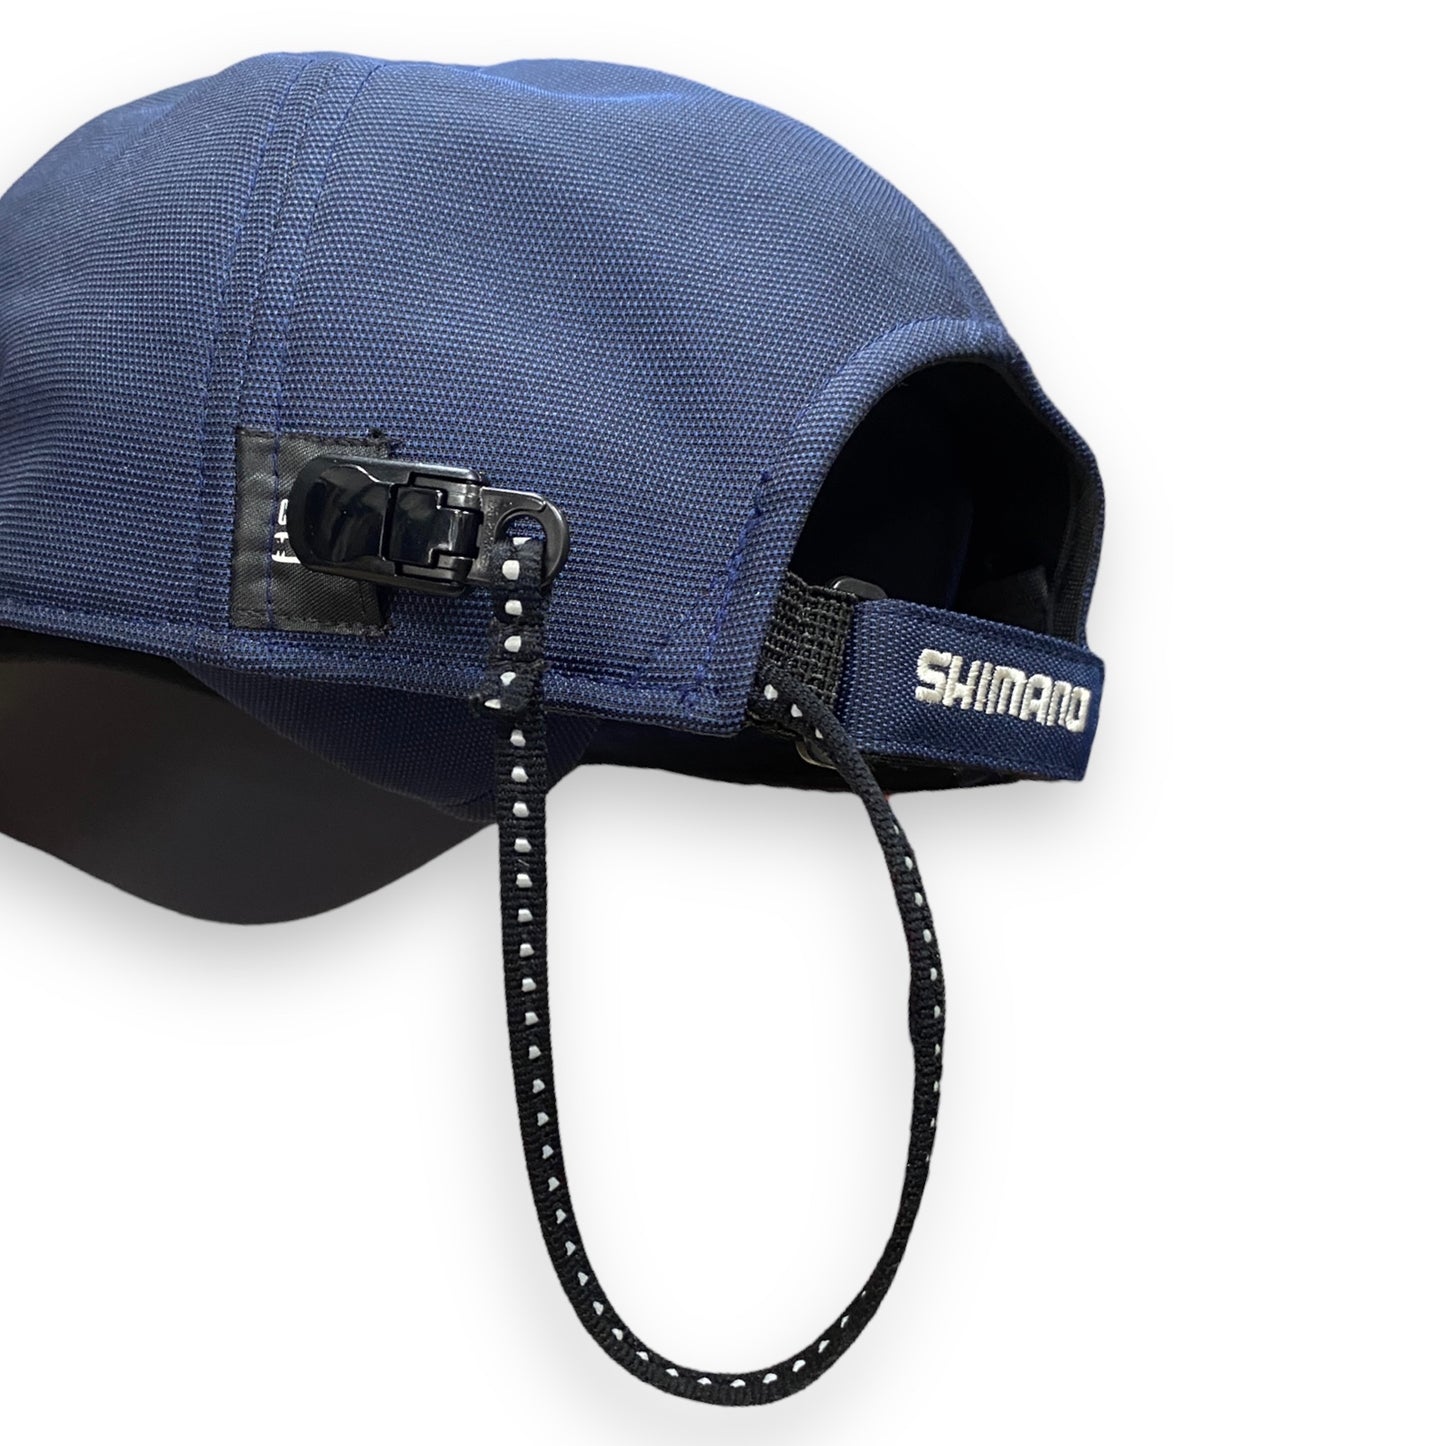 Shimano Ear-Flap Cap